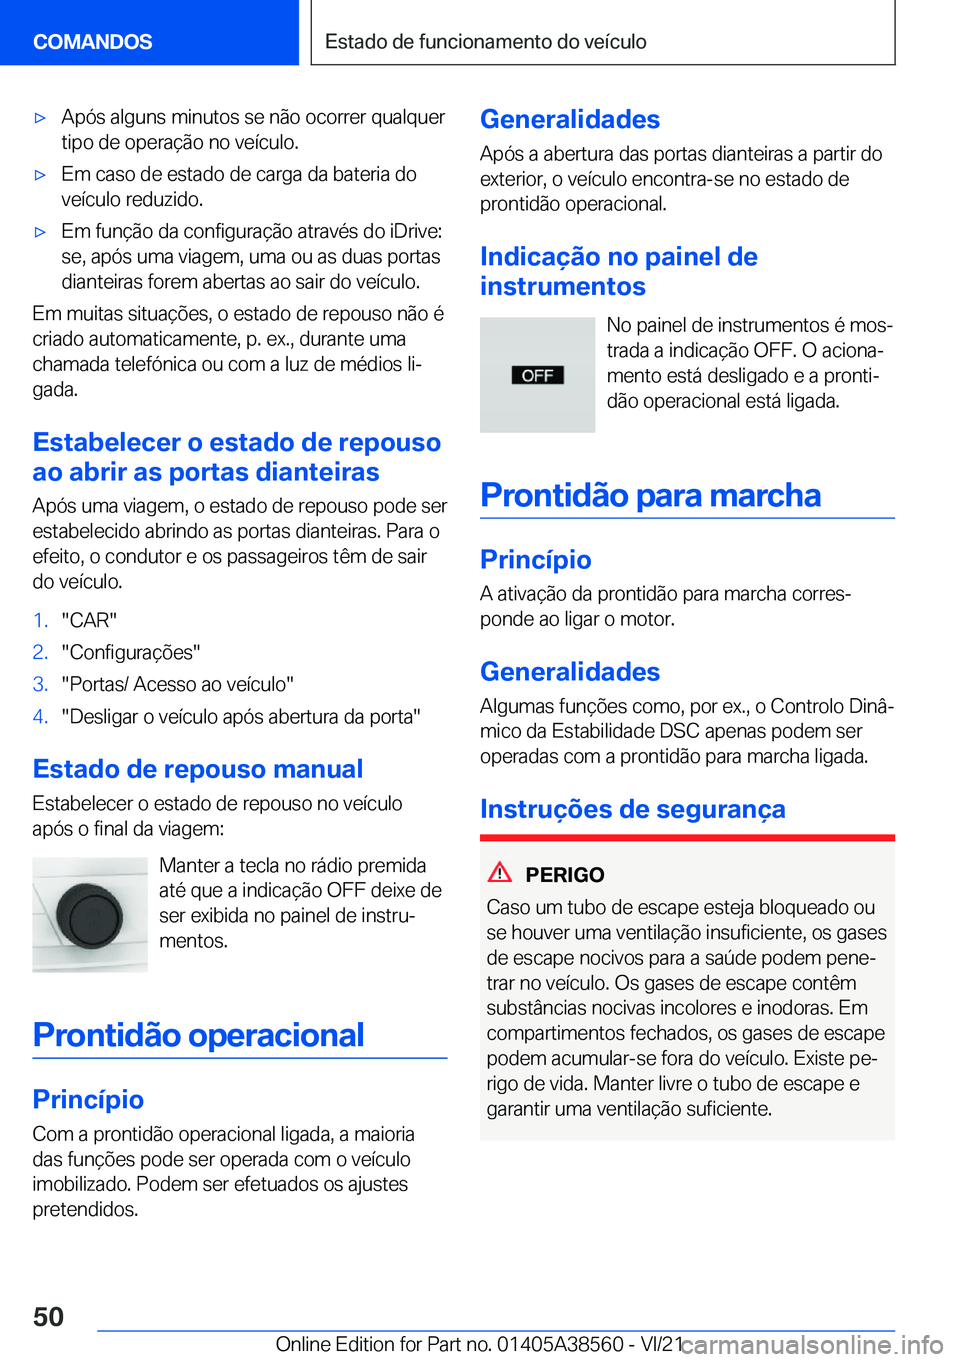 BMW X6 2022  Manual do condutor (in Portuguese) x�A�p�ó�s��a�l�g�u�n�s��m�i�n�u�t�o�s��s�e��n�ã�o��o�c�o�r�r�e�r��q�u�a�l�q�u�e�r�t�i�p�o��d�e��o�p�e�r�a�